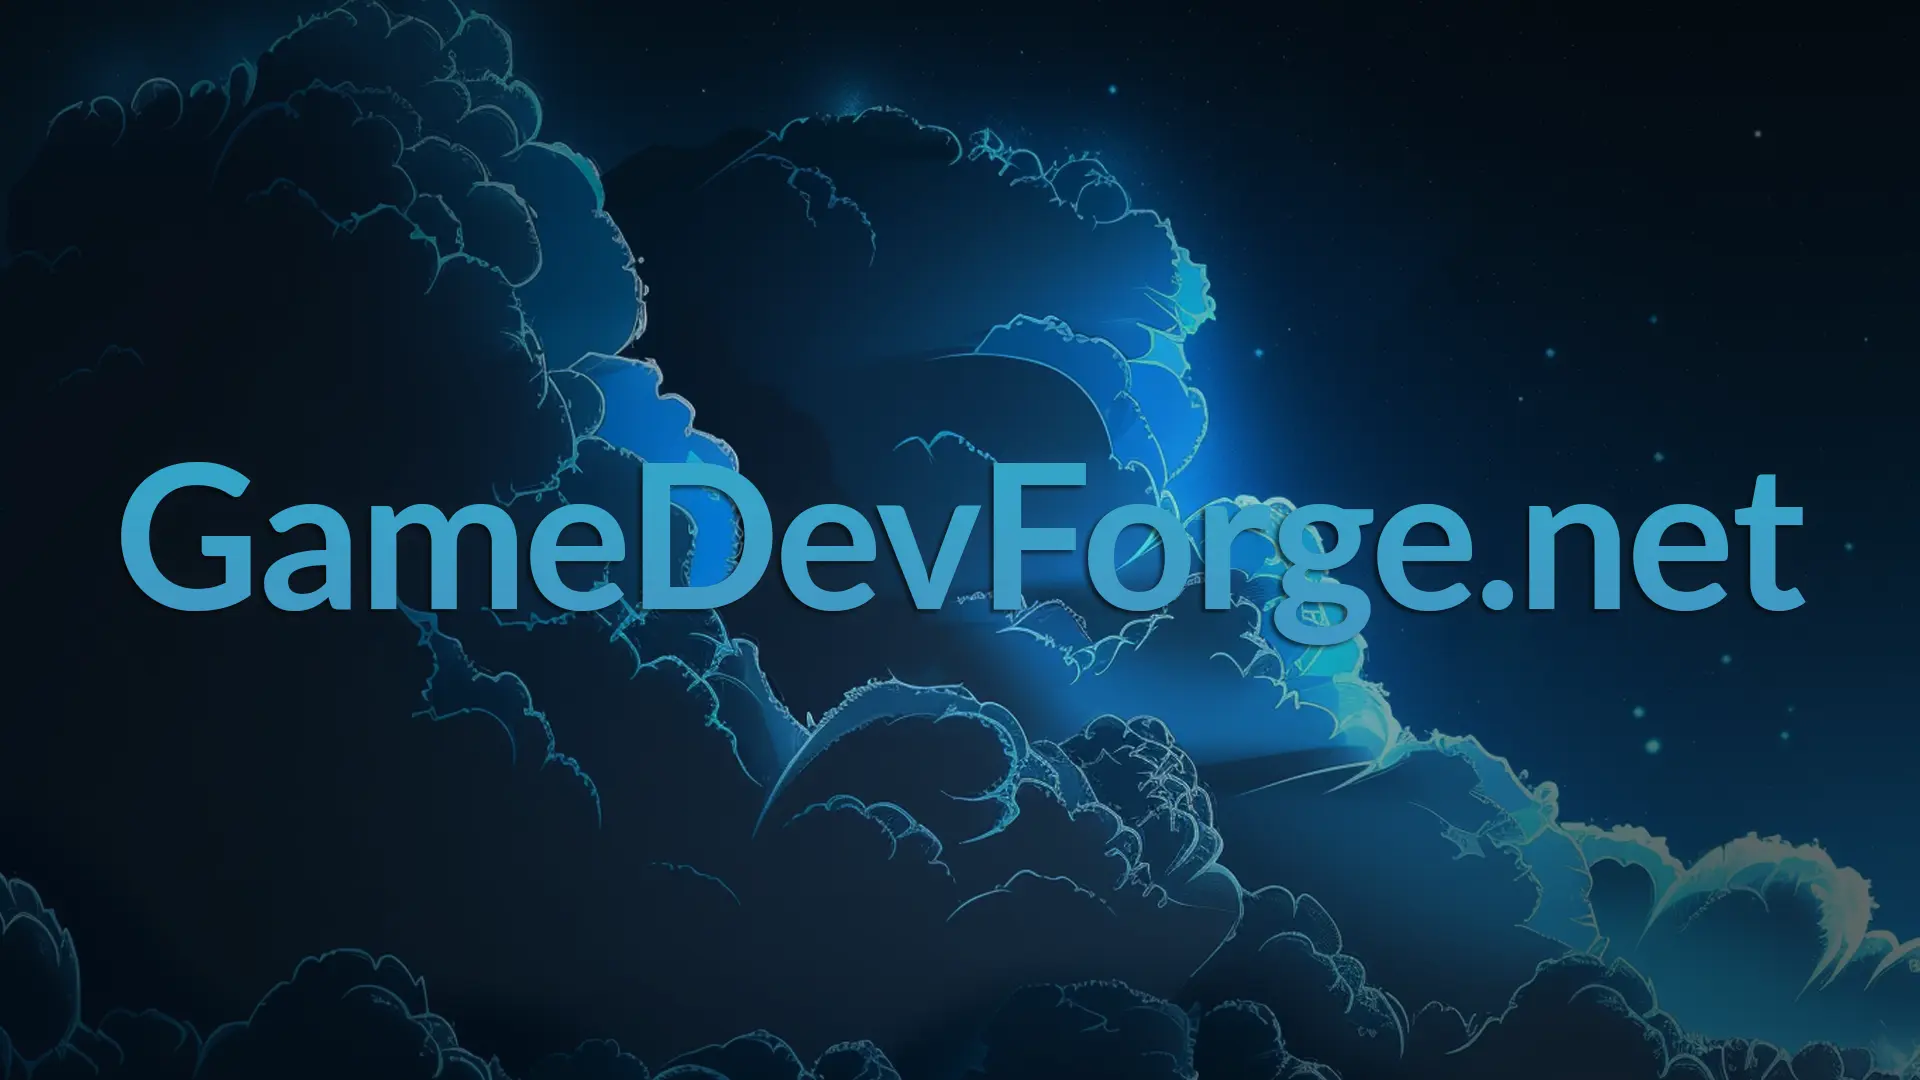 GameDevForge